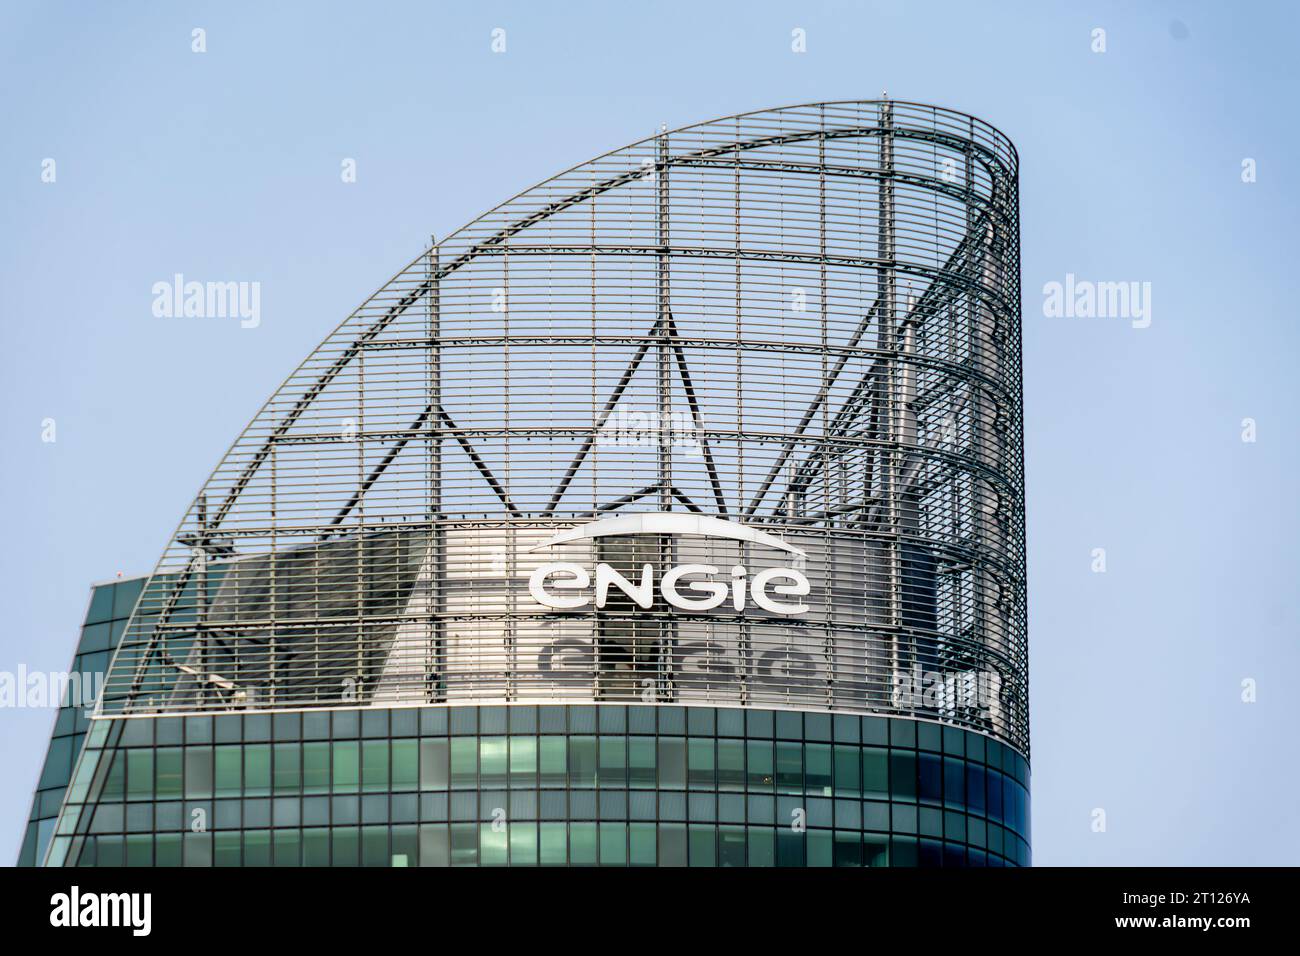 Sommet de la tour abritant le siège social d’Engie, un groupe industriel français de l’énergie, Paris la Défense, France Banque D'Images